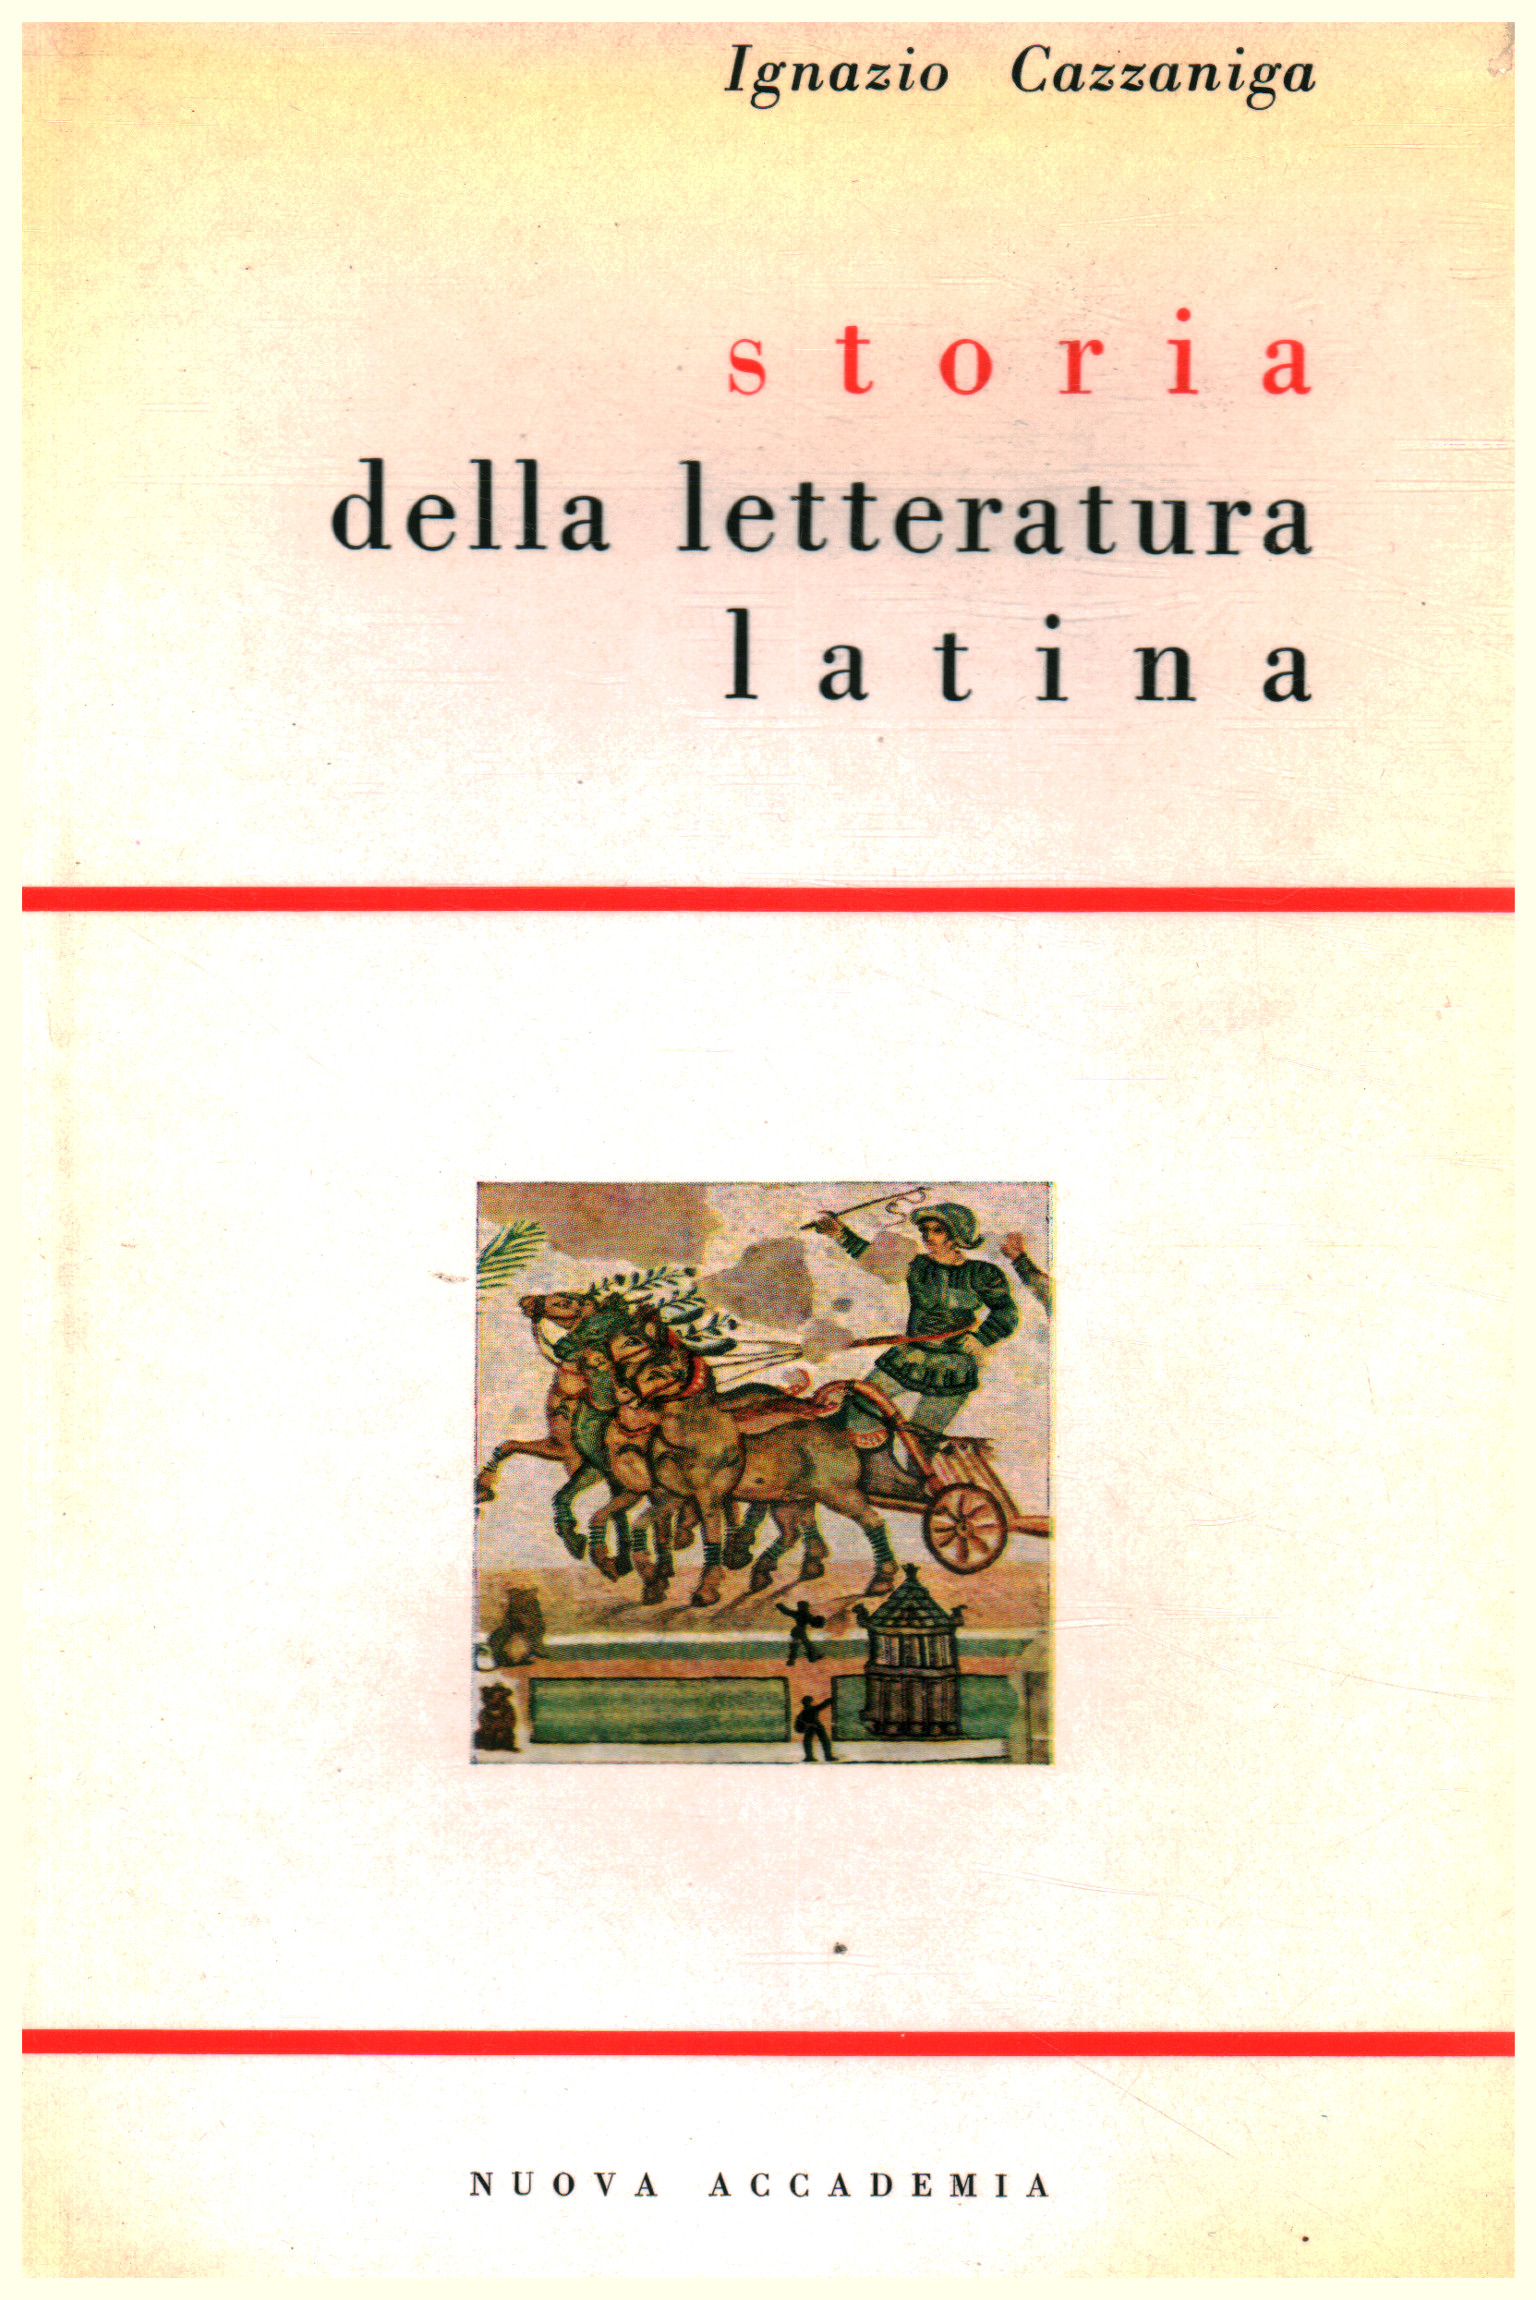 Storia della letteratura latina, Ignazio Cazzaniga